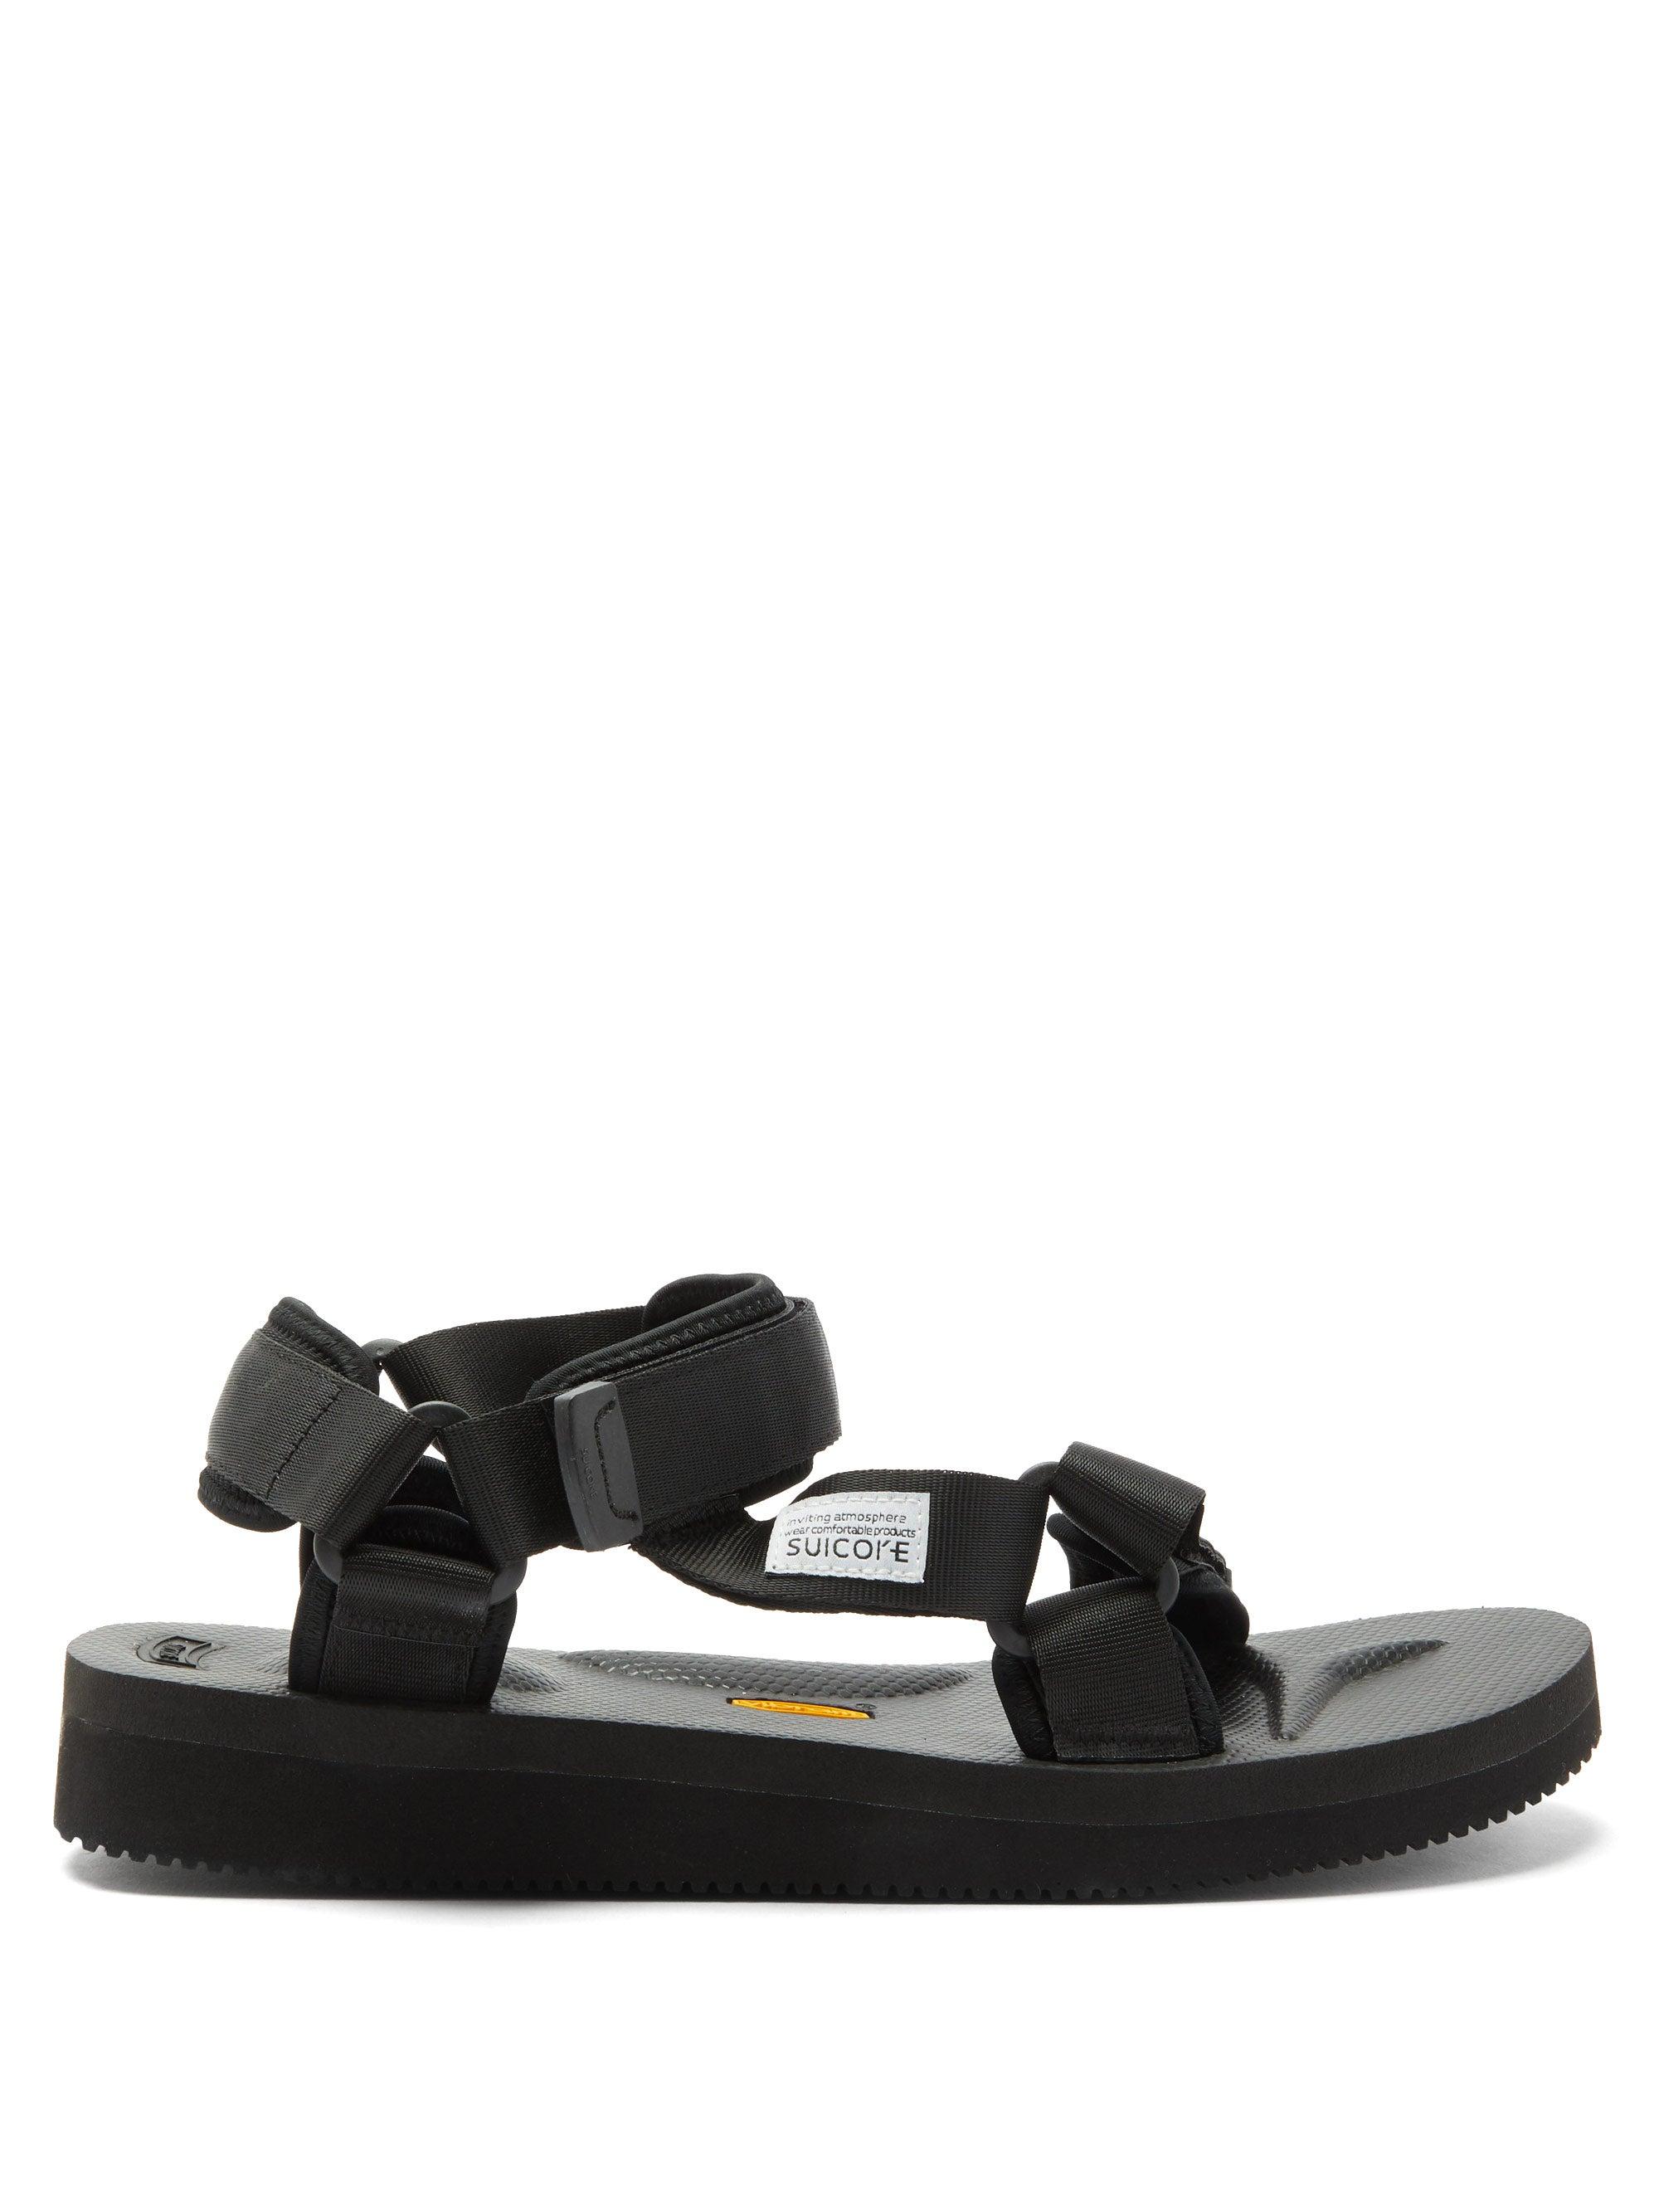 Suicoke Neoprene Depa-v2 Velcro-strap Sandals in Black for Men - Lyst